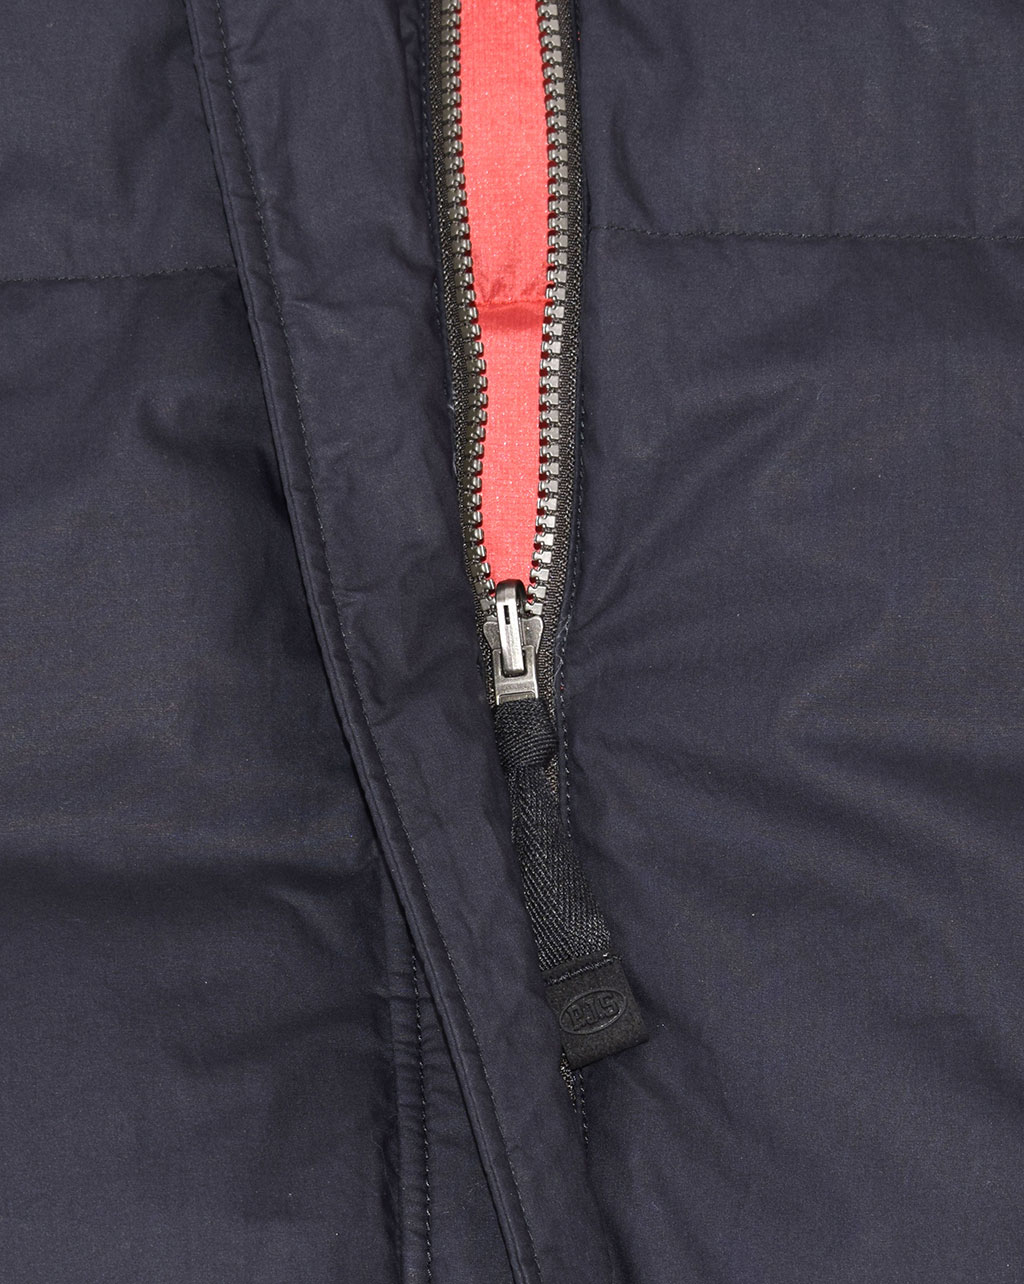 Женское пальто пуховое PARAJUMPERS SLEEPING BAG двустороннее FW 19/20 pencil 